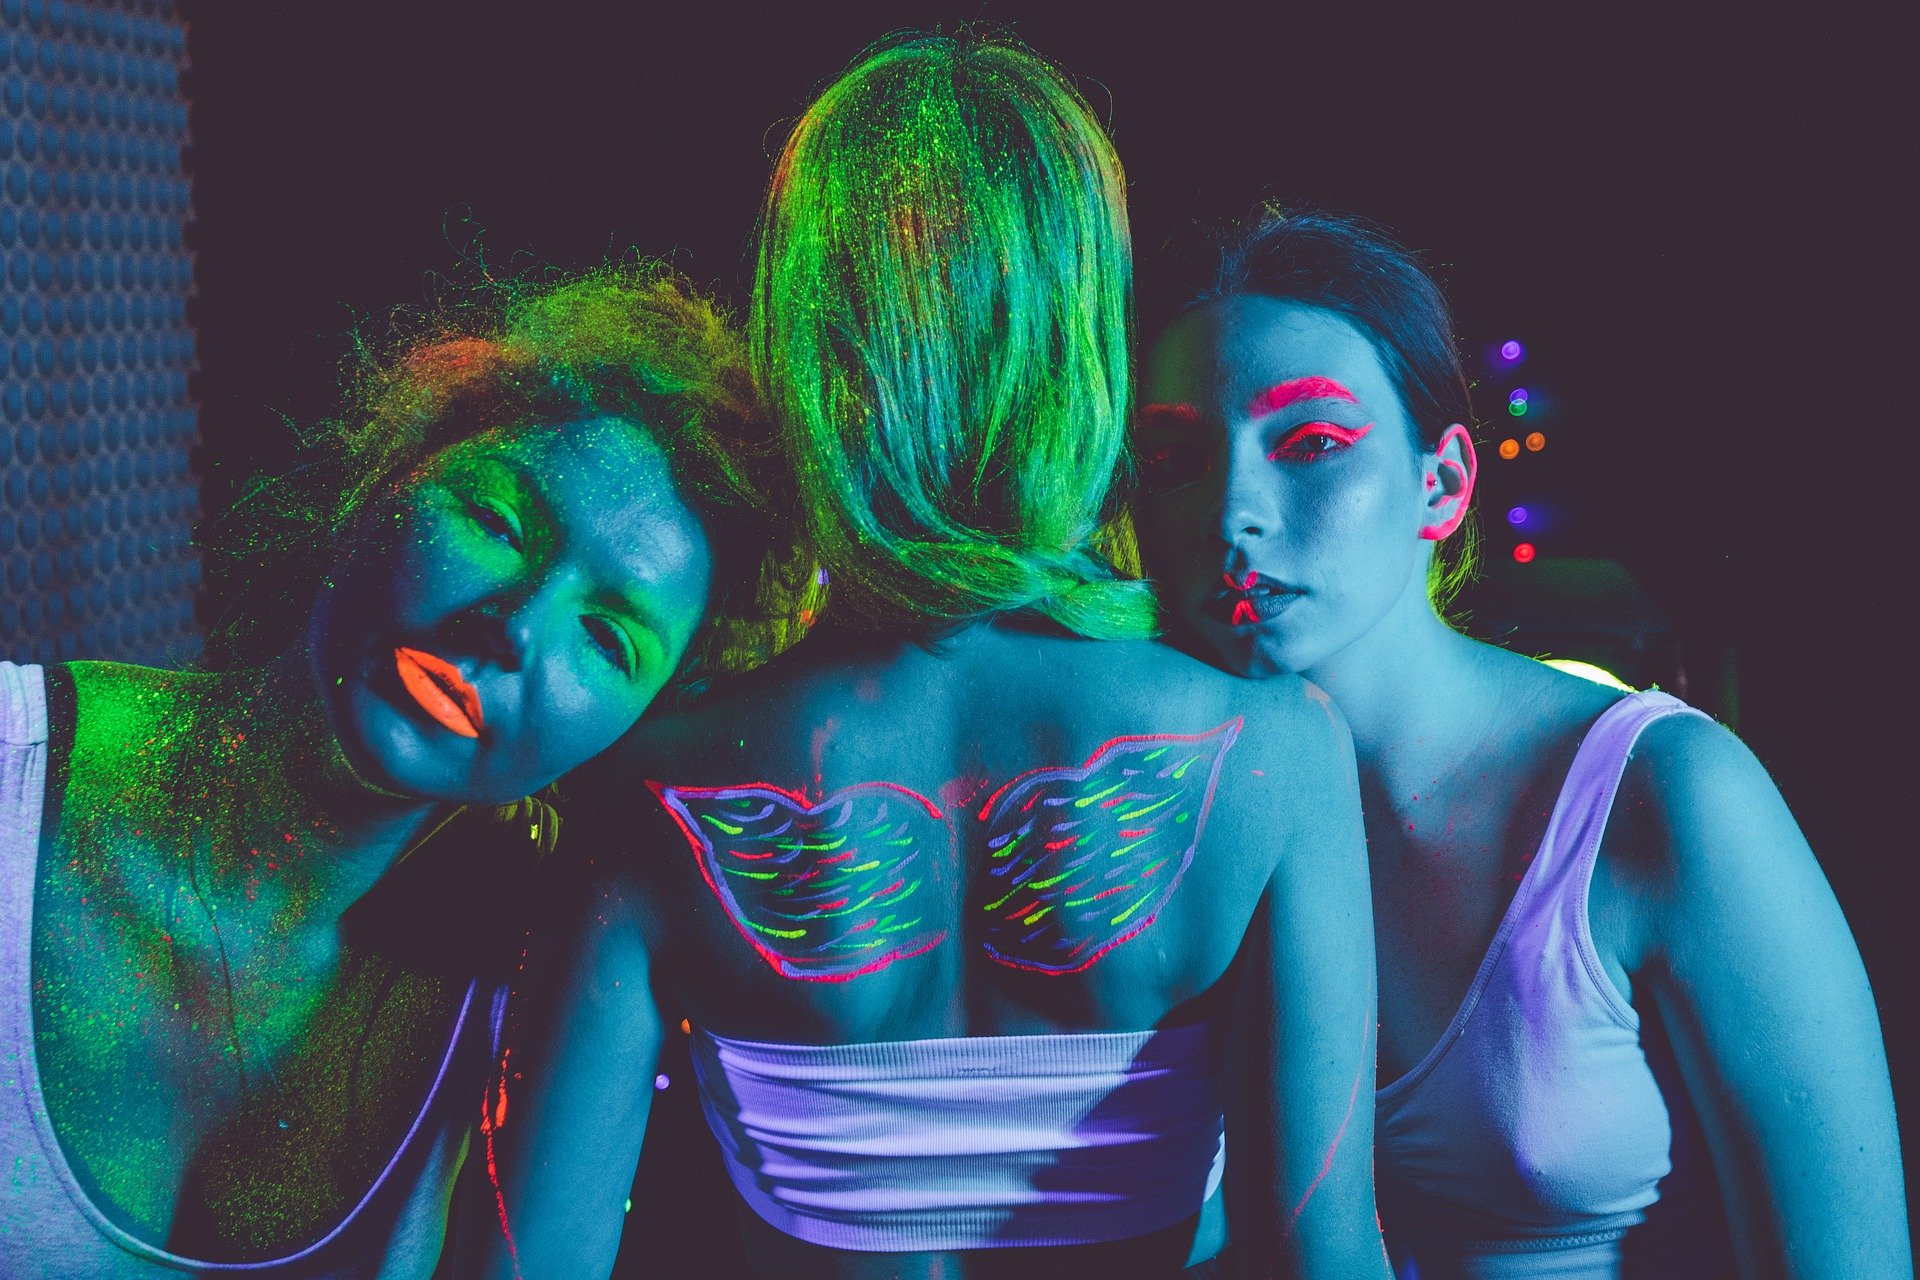 tre ragazze col corpo dipinto di blu e da disegni fluo addosso, di cui una di spalle